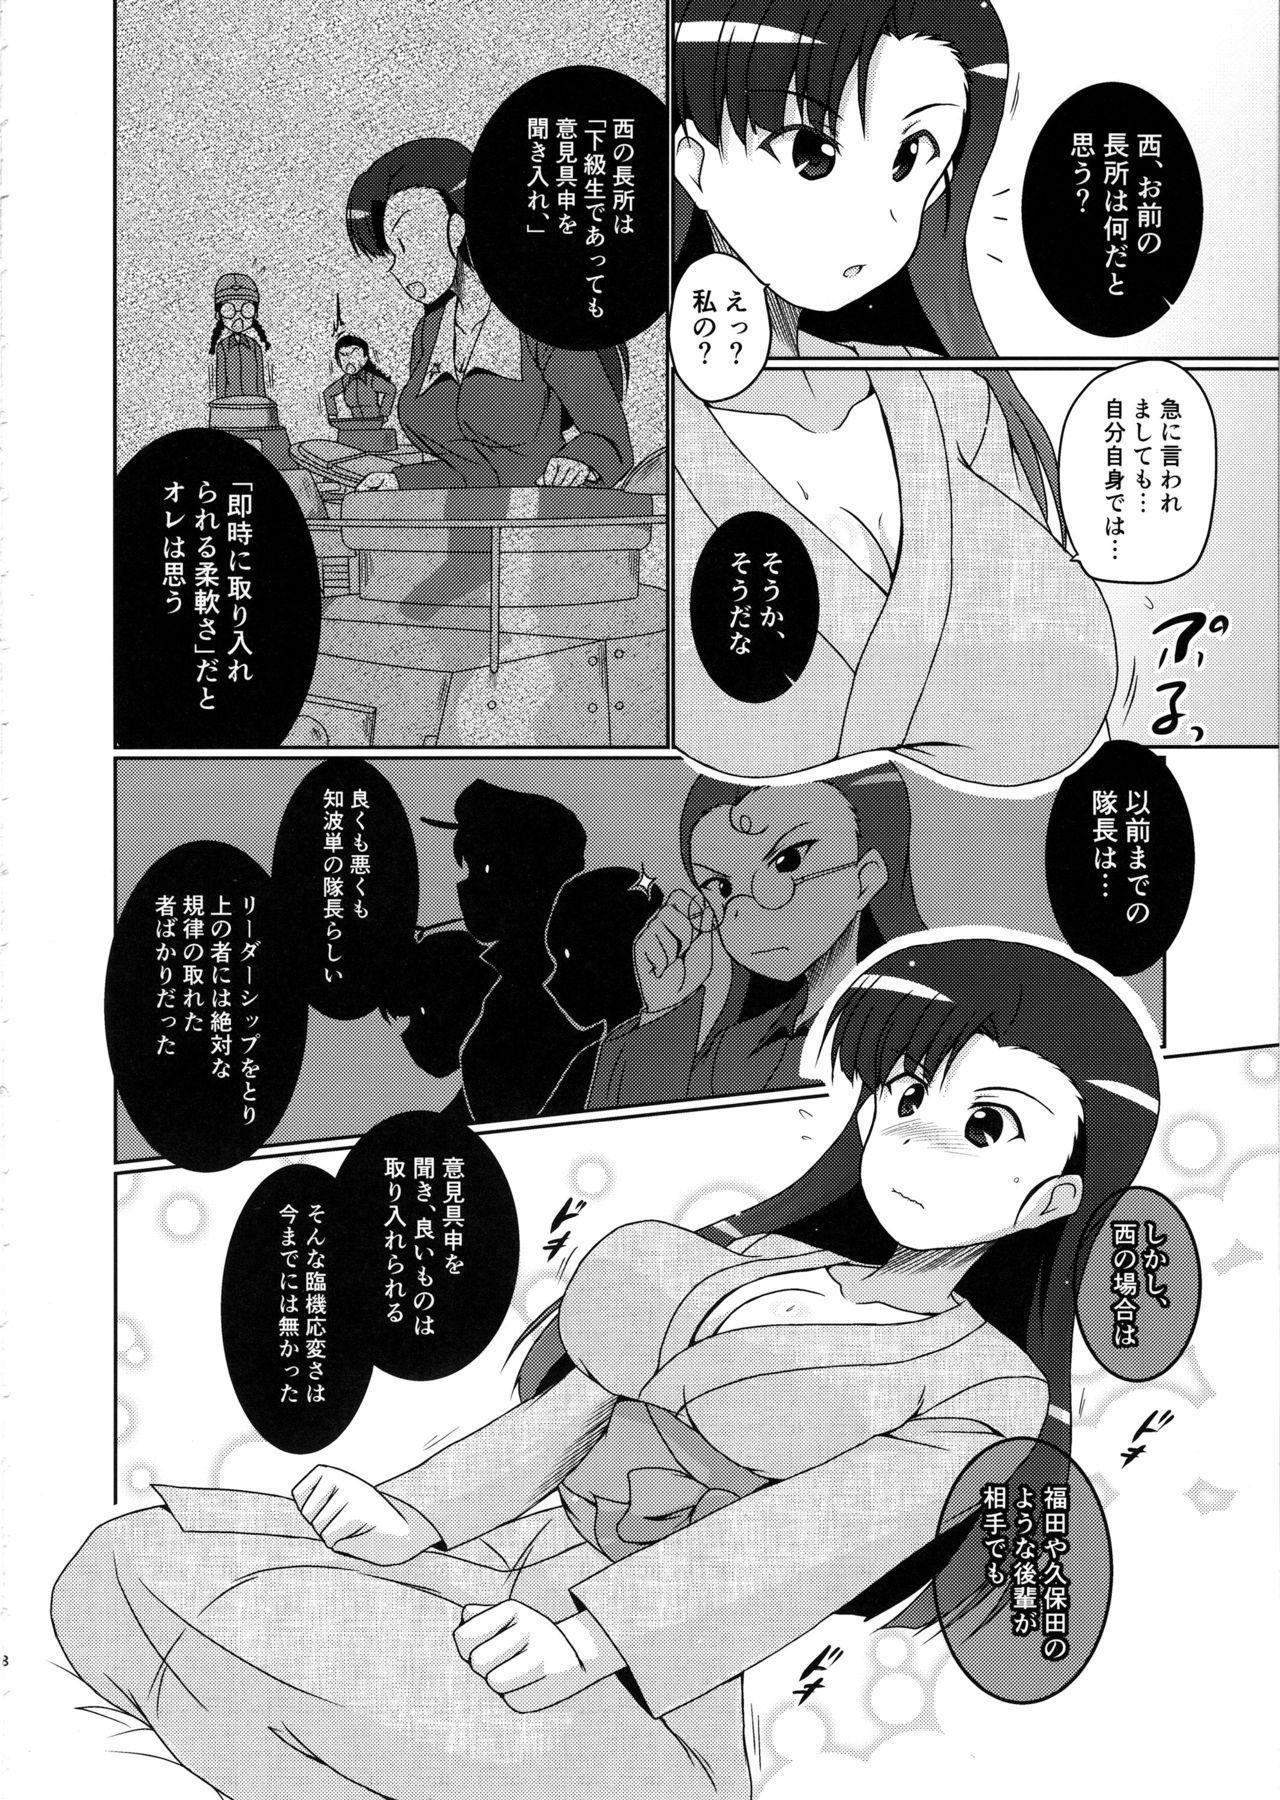 Behind Nishi Taichou to Yoru no Senjutsu Tokkun desu! - Girls und panzer Spy Camera - Page 7